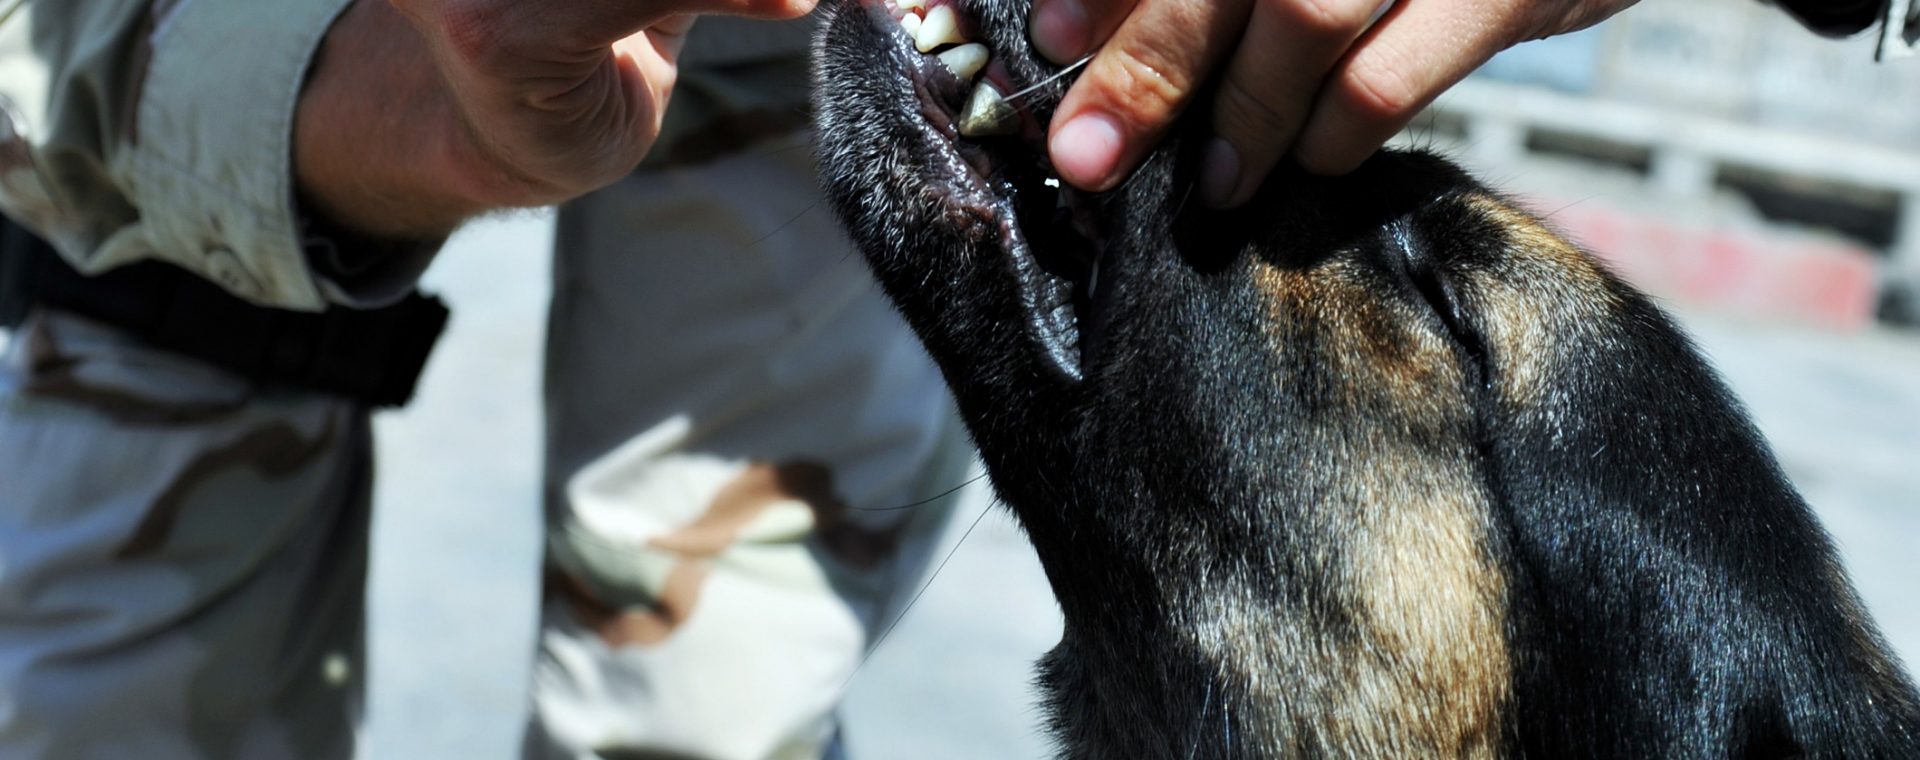 come-stabilire-una-routine-di-cure-dentistiche-per-il-tuo-animale-domestico?